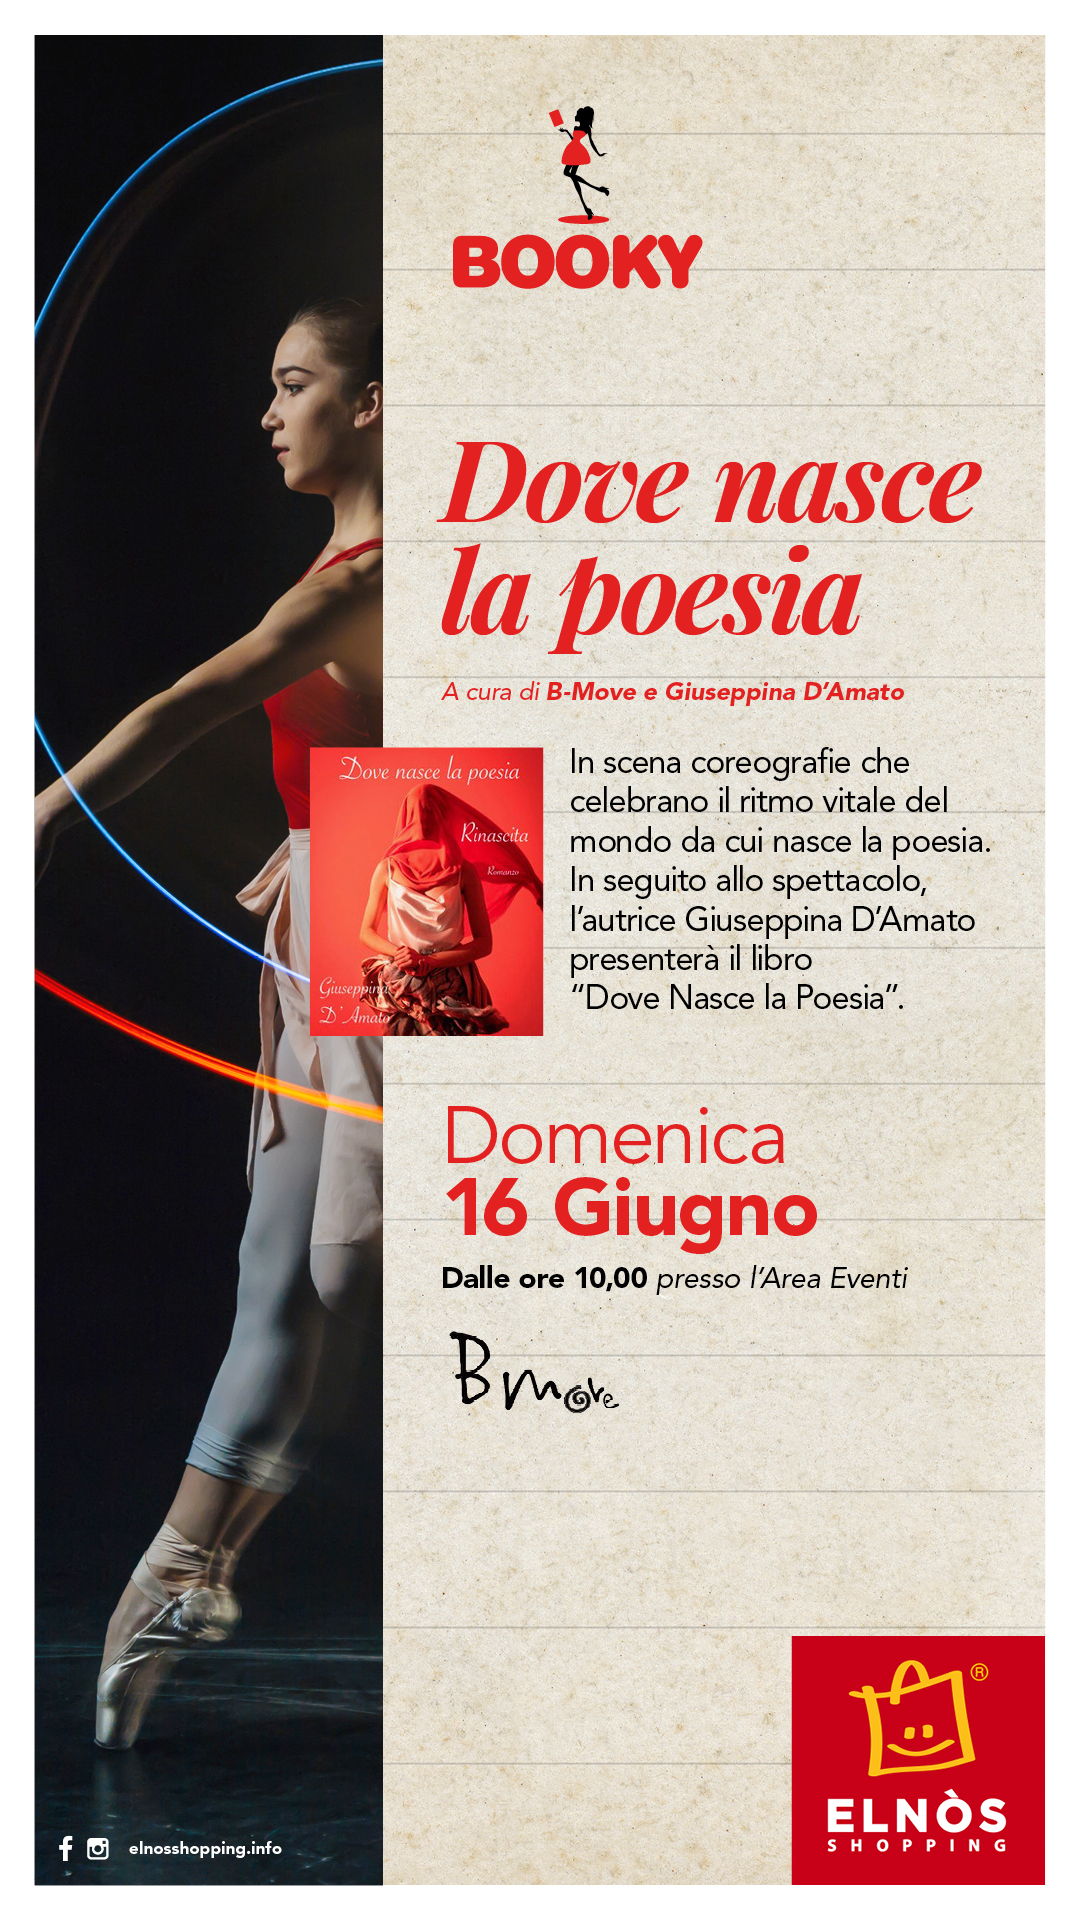 Dove nasce la poesia, romanzo di  Giuseppina D'Amato, presentazione con la scuola di danza B-Move.